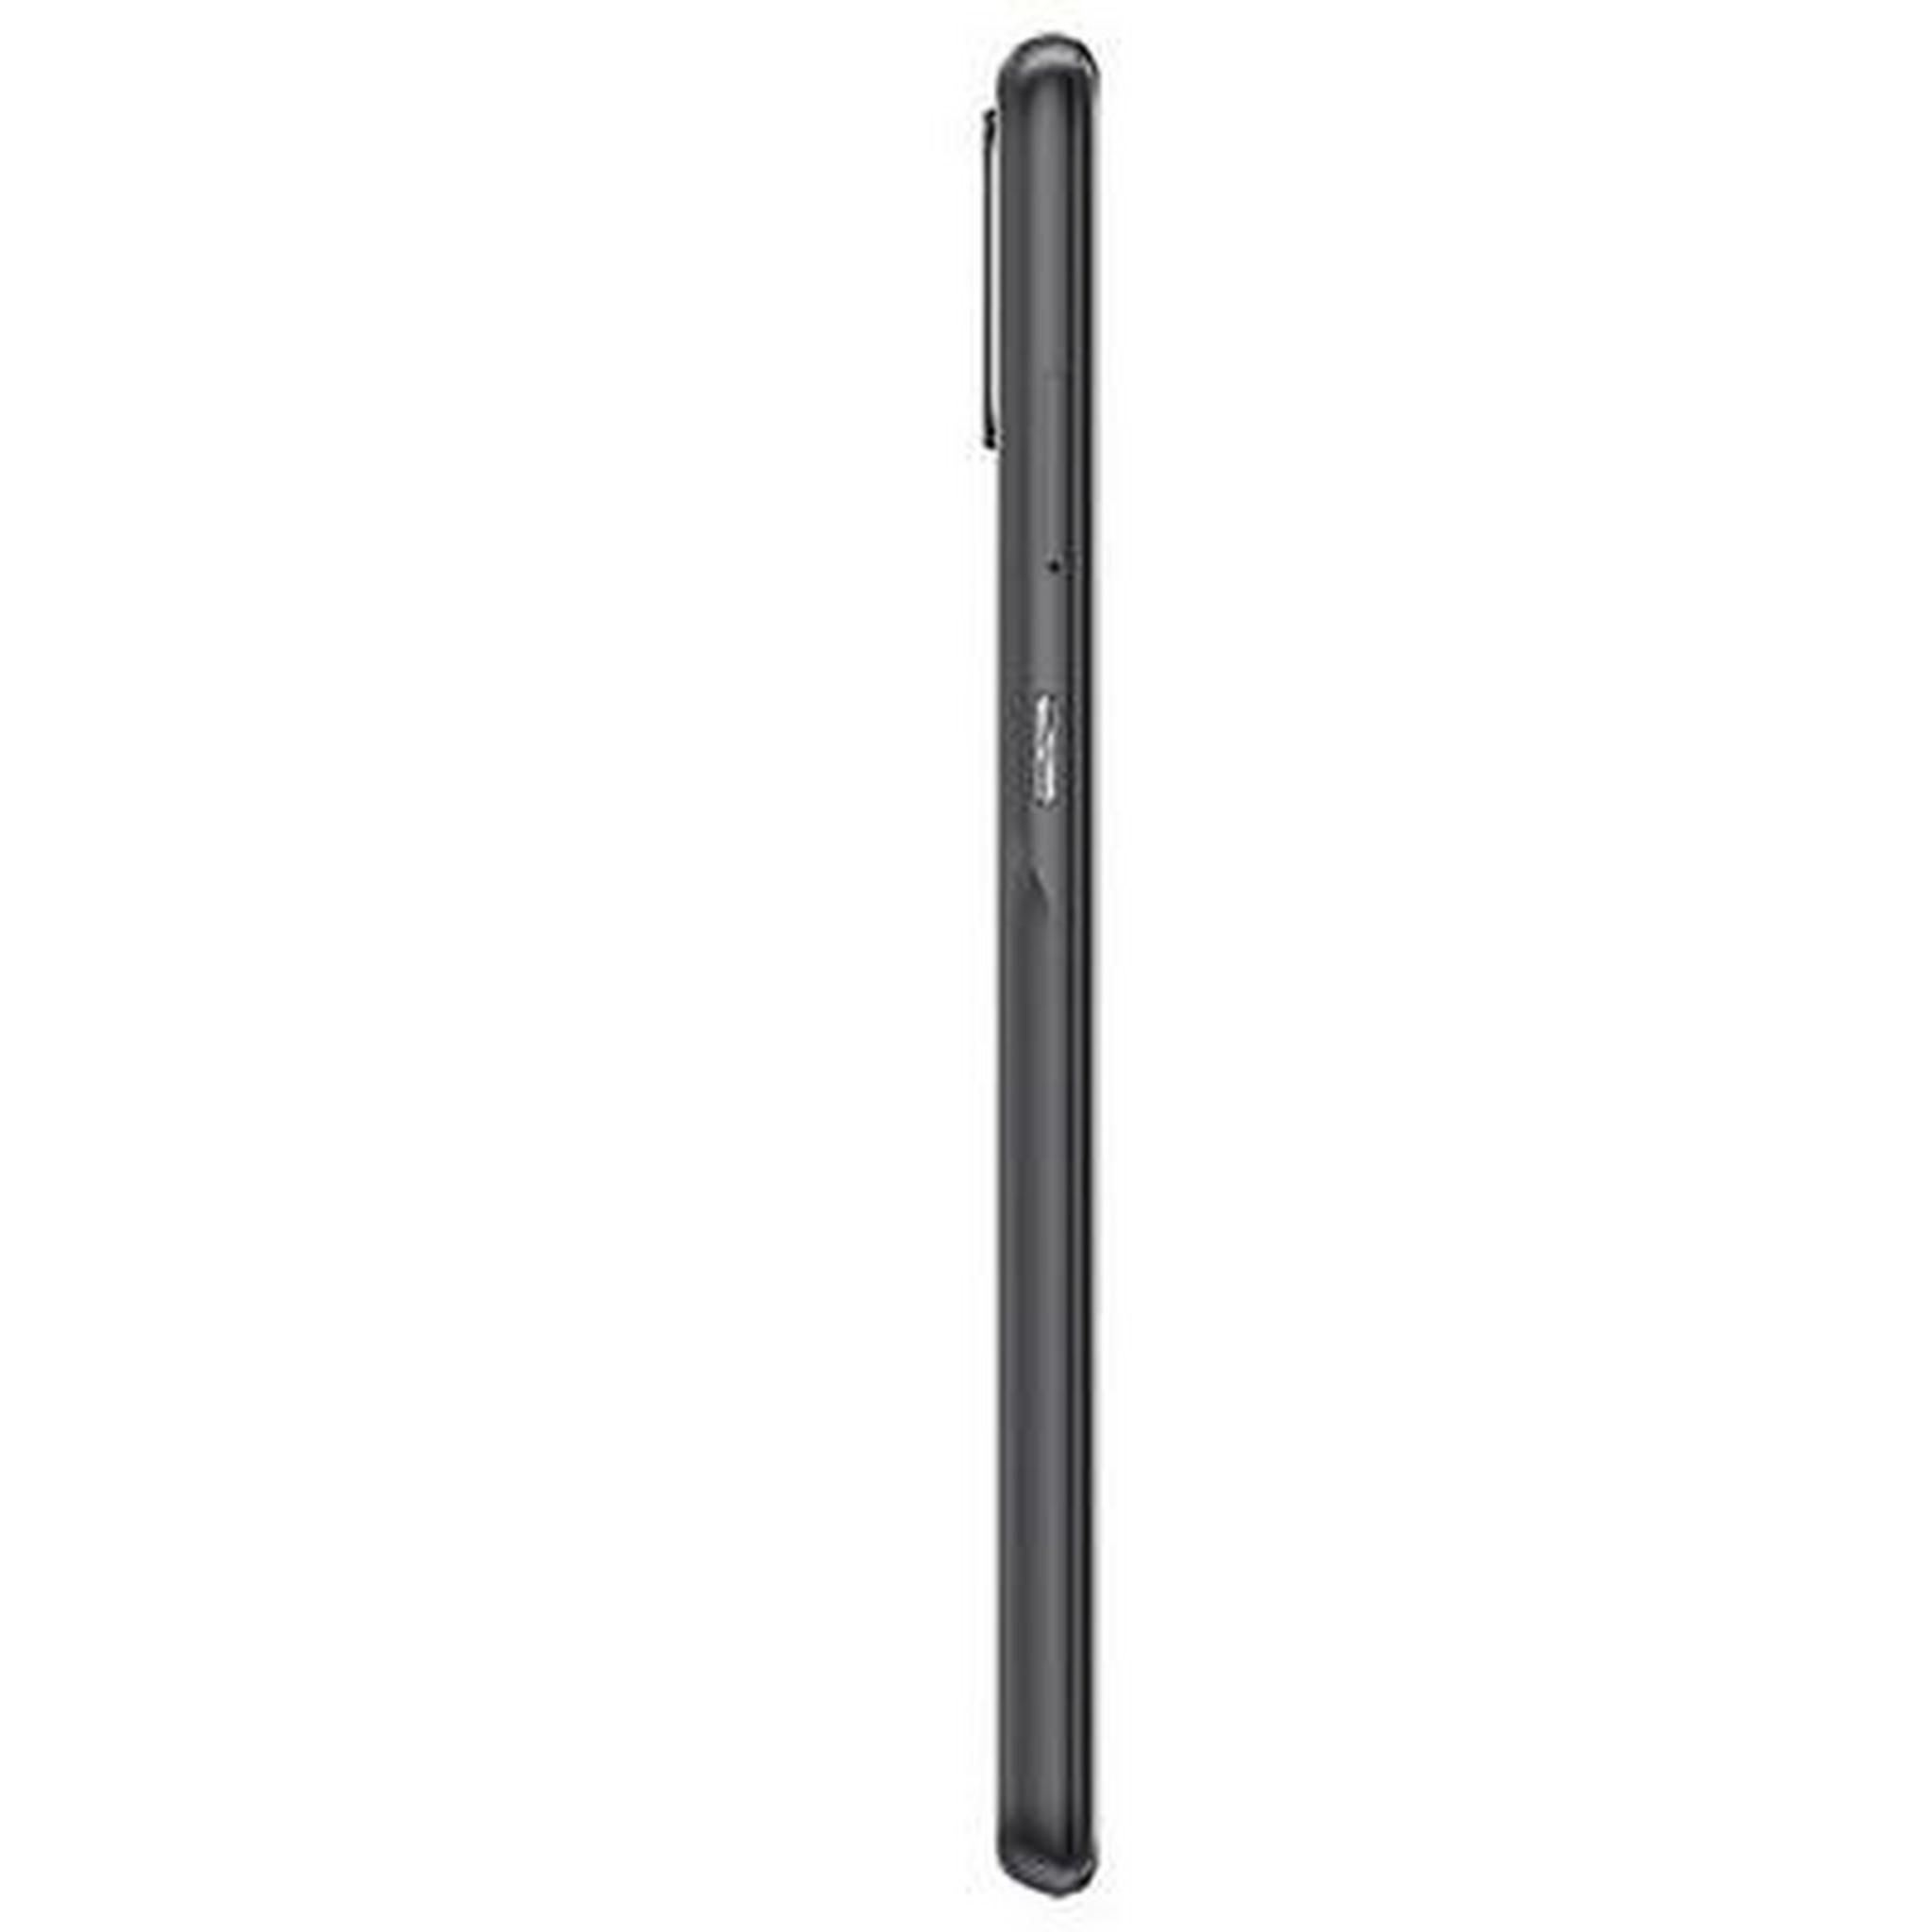 Alcatel 3X 128GB Phone - Black